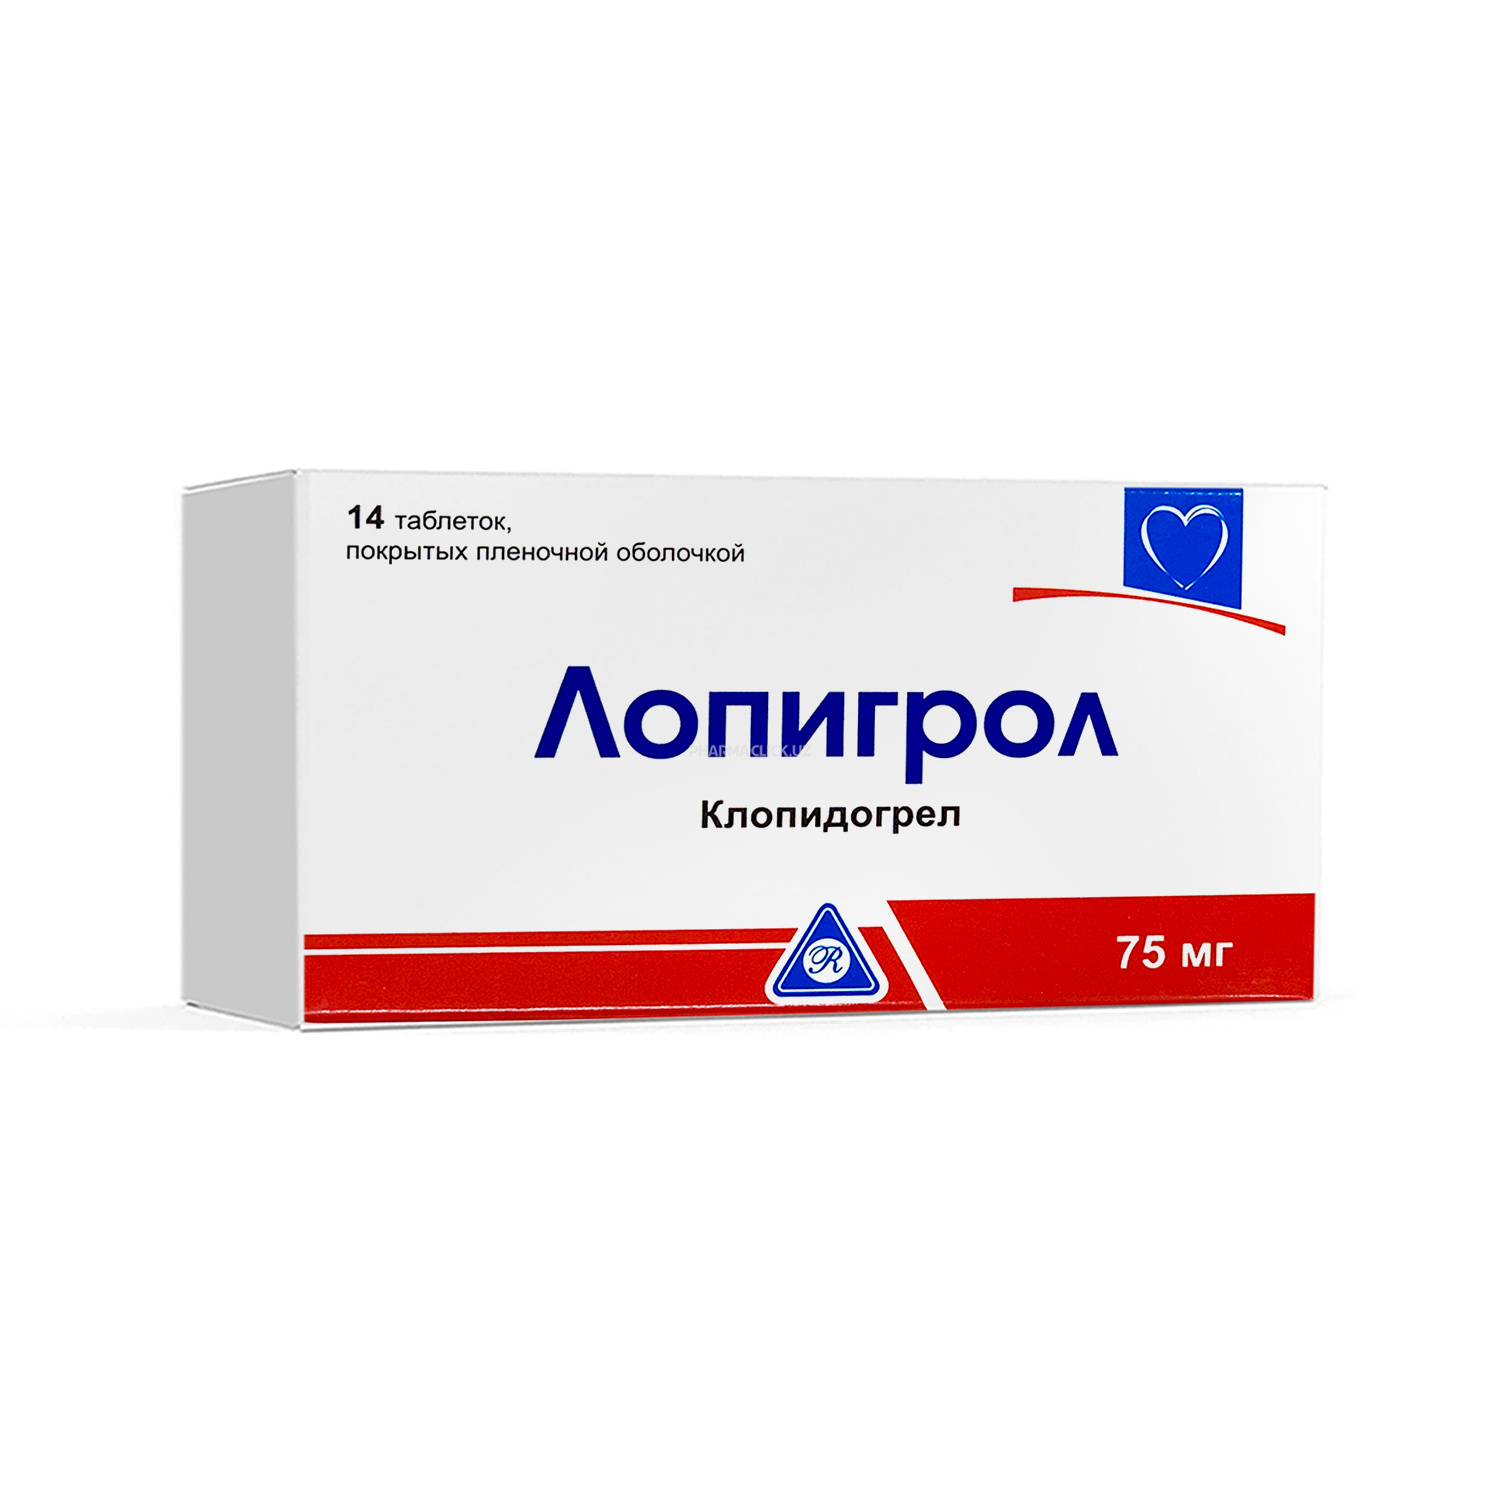 Lopigrol tabl. 75 mg. №14